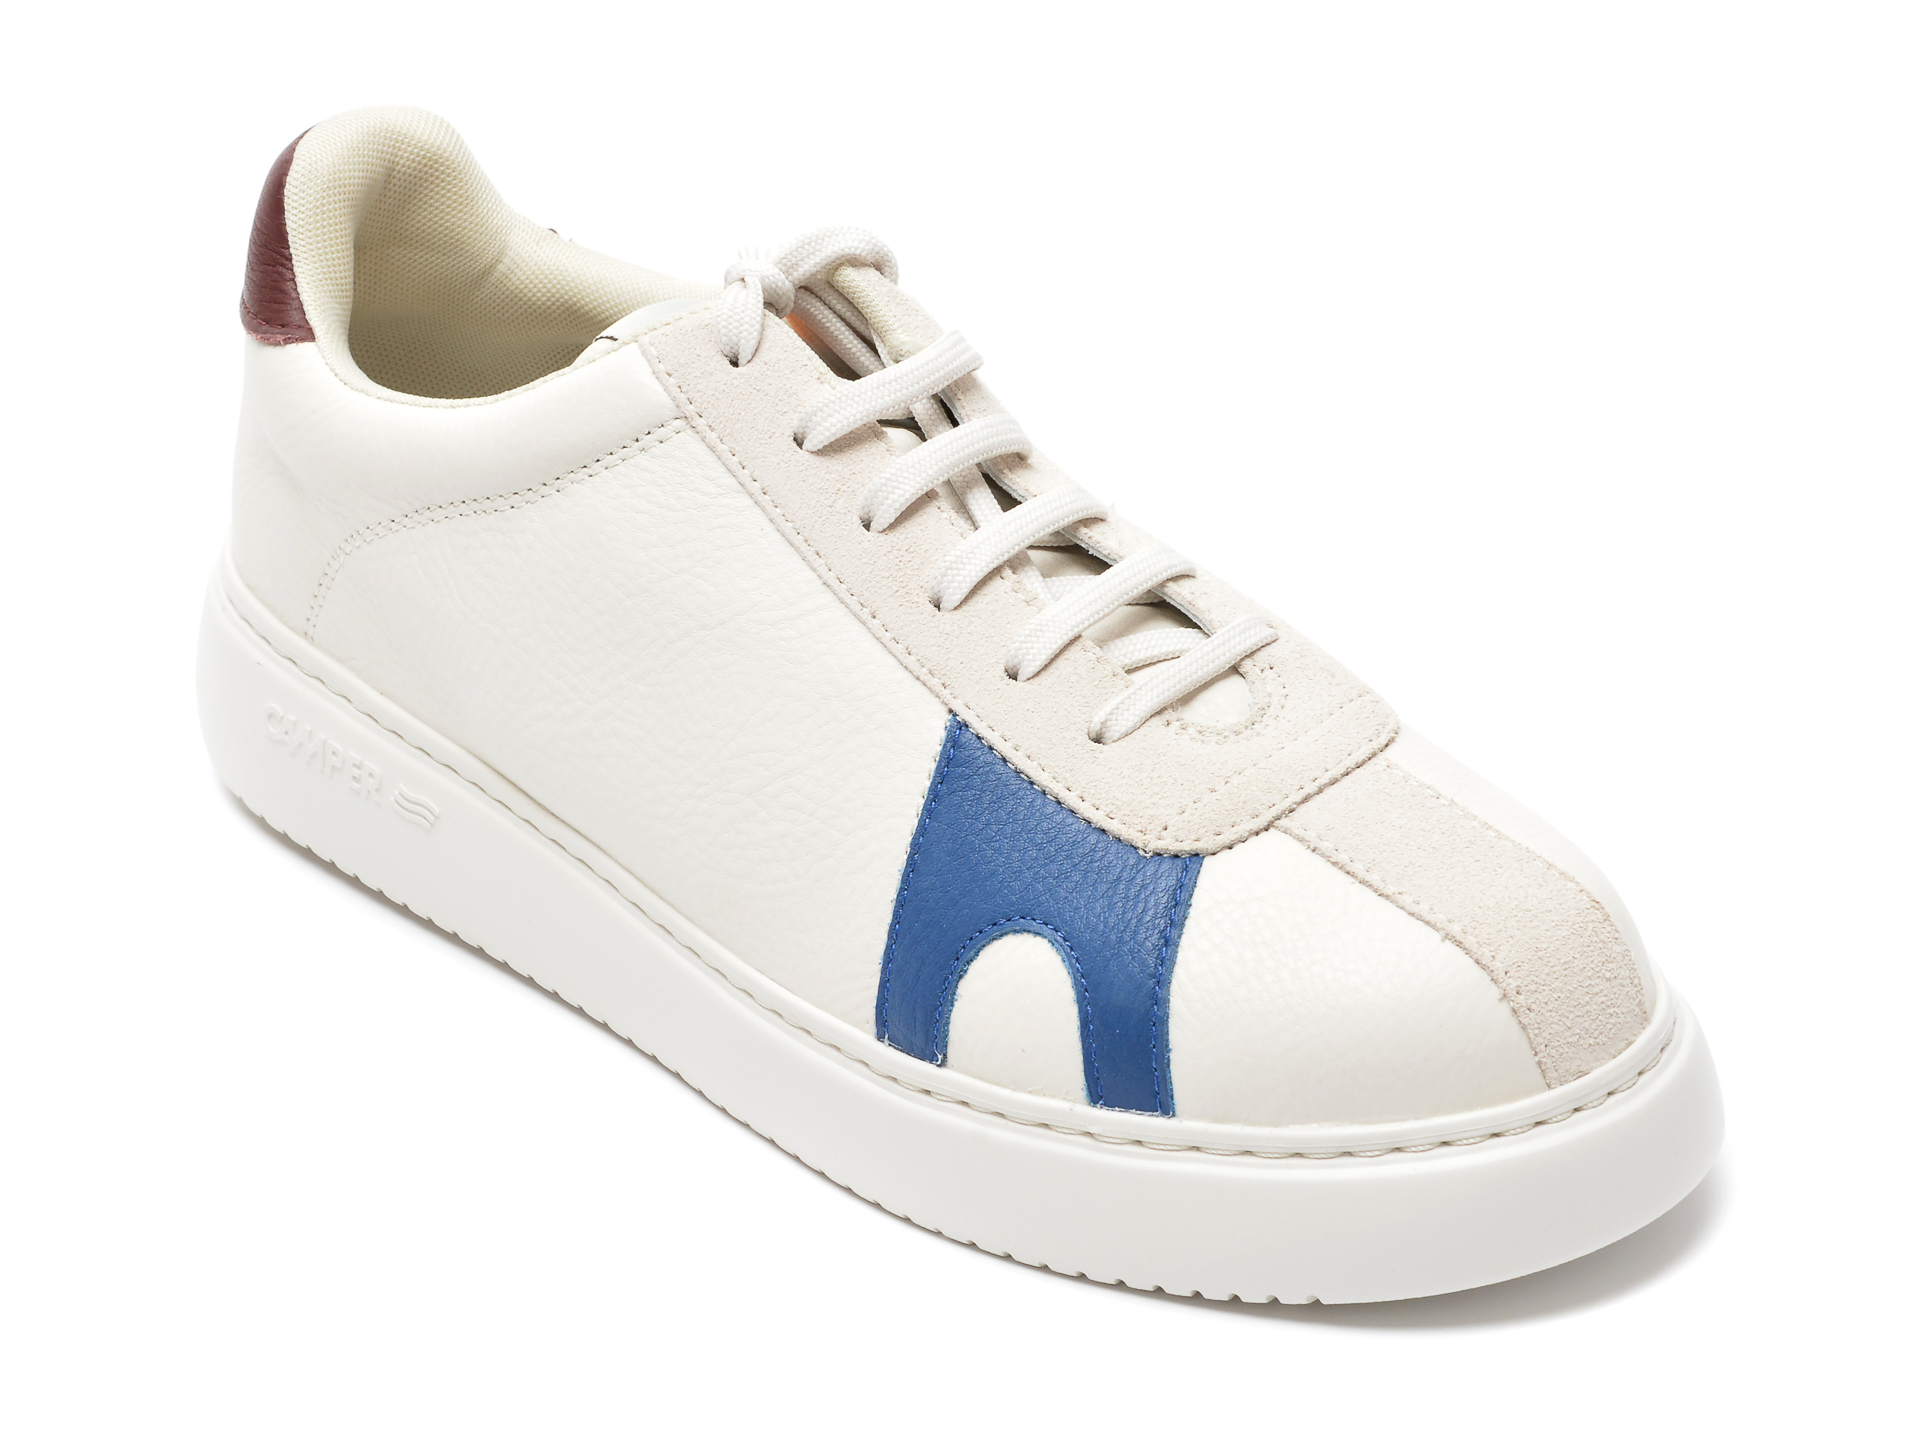 Pantofi CAMPER albi, K100743, din piele naturala Camper